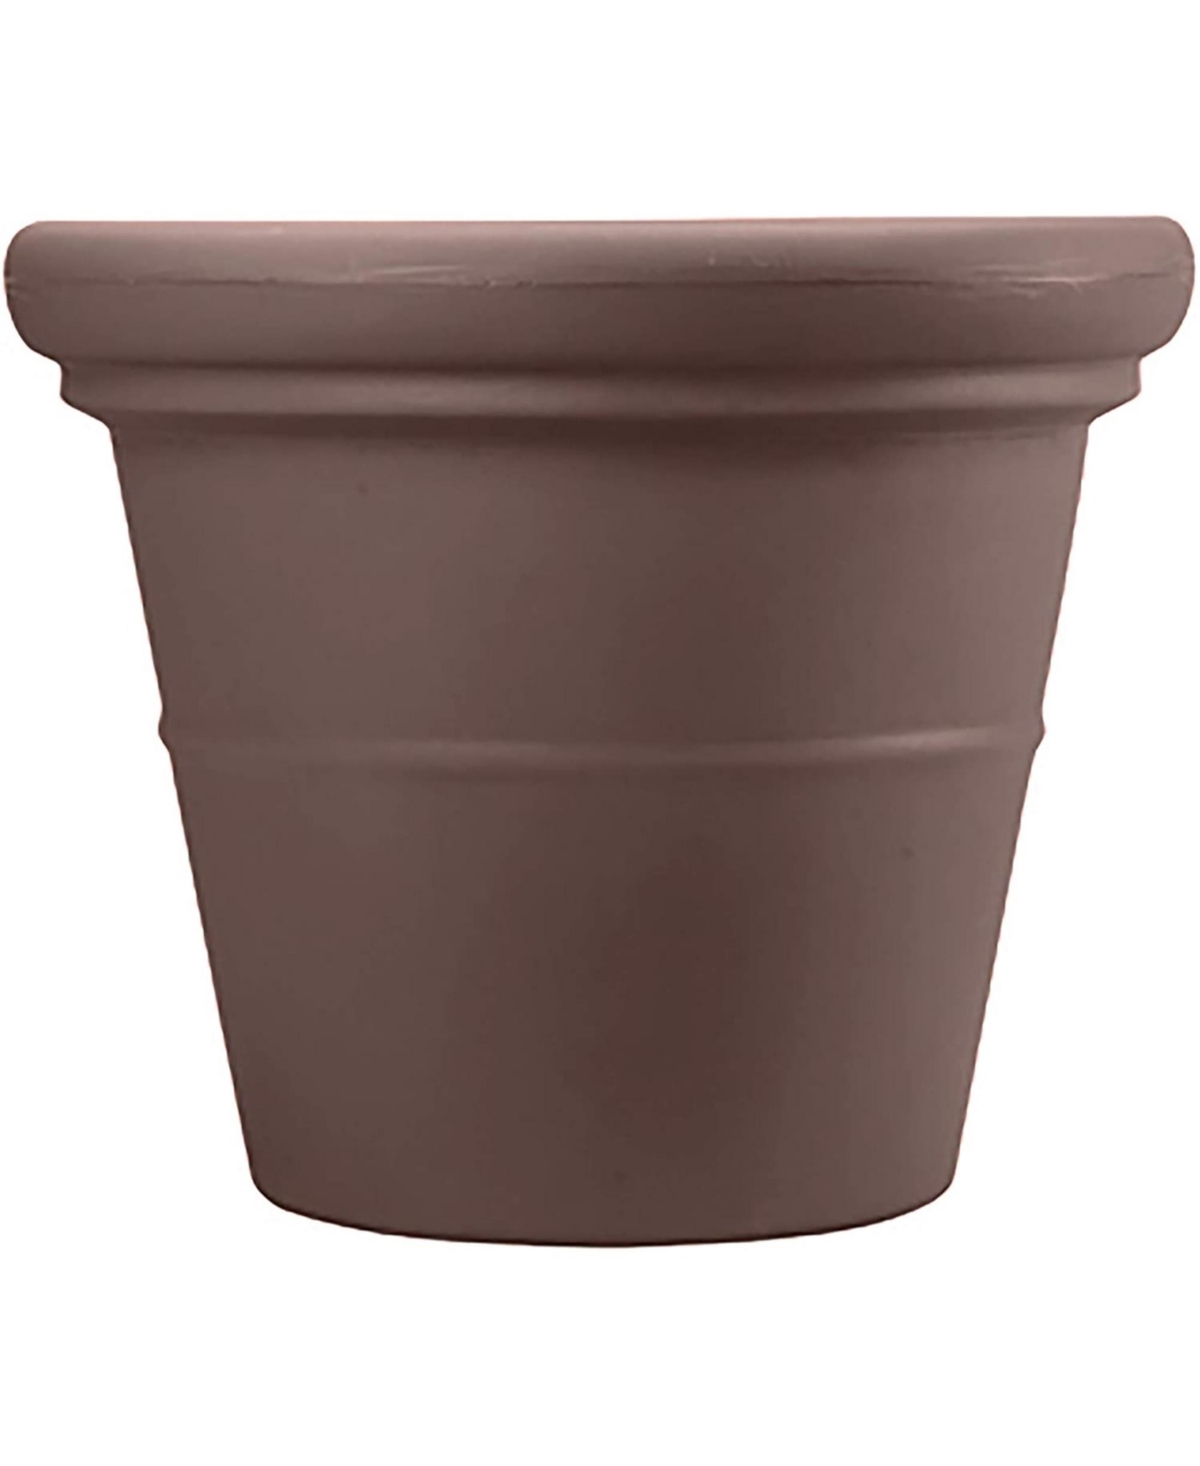 TEA20000E21 Terrazzo Round Pot Planter Chocolate 20in - Brown